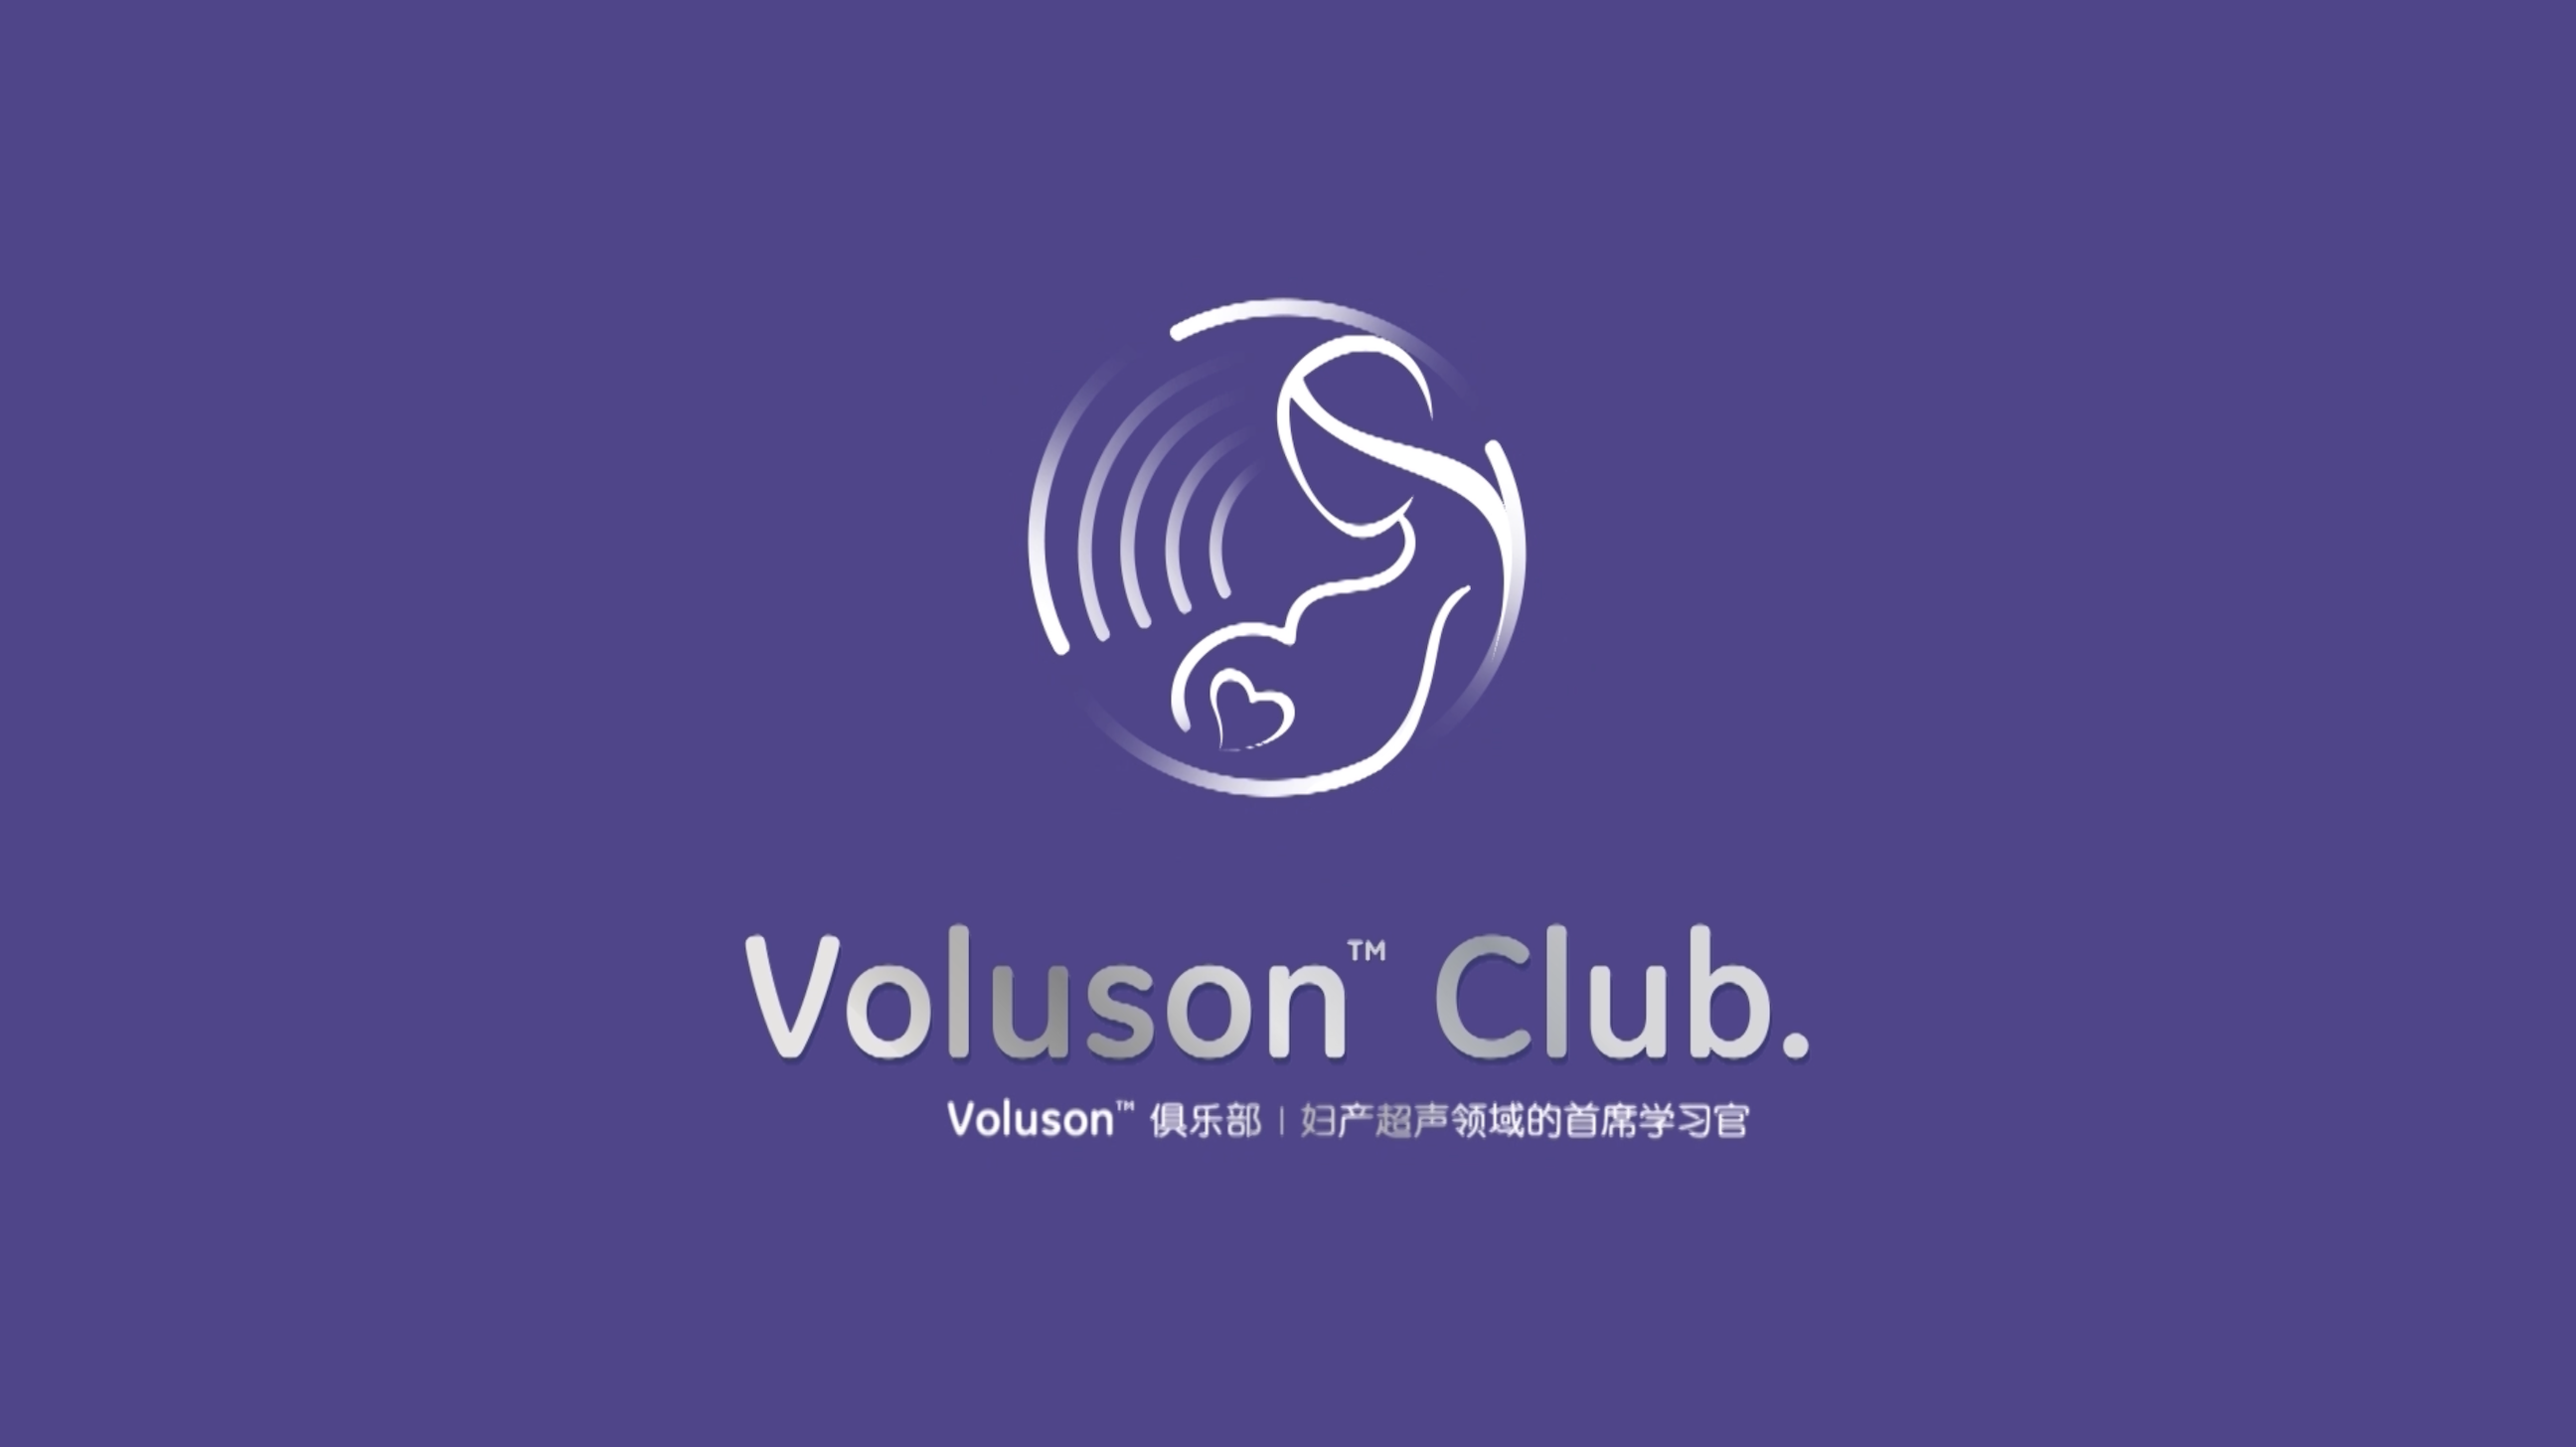 【Voluson俱乐部】子宫腔评估：使用测量方法来区分正常变异和分隔/T型子宫